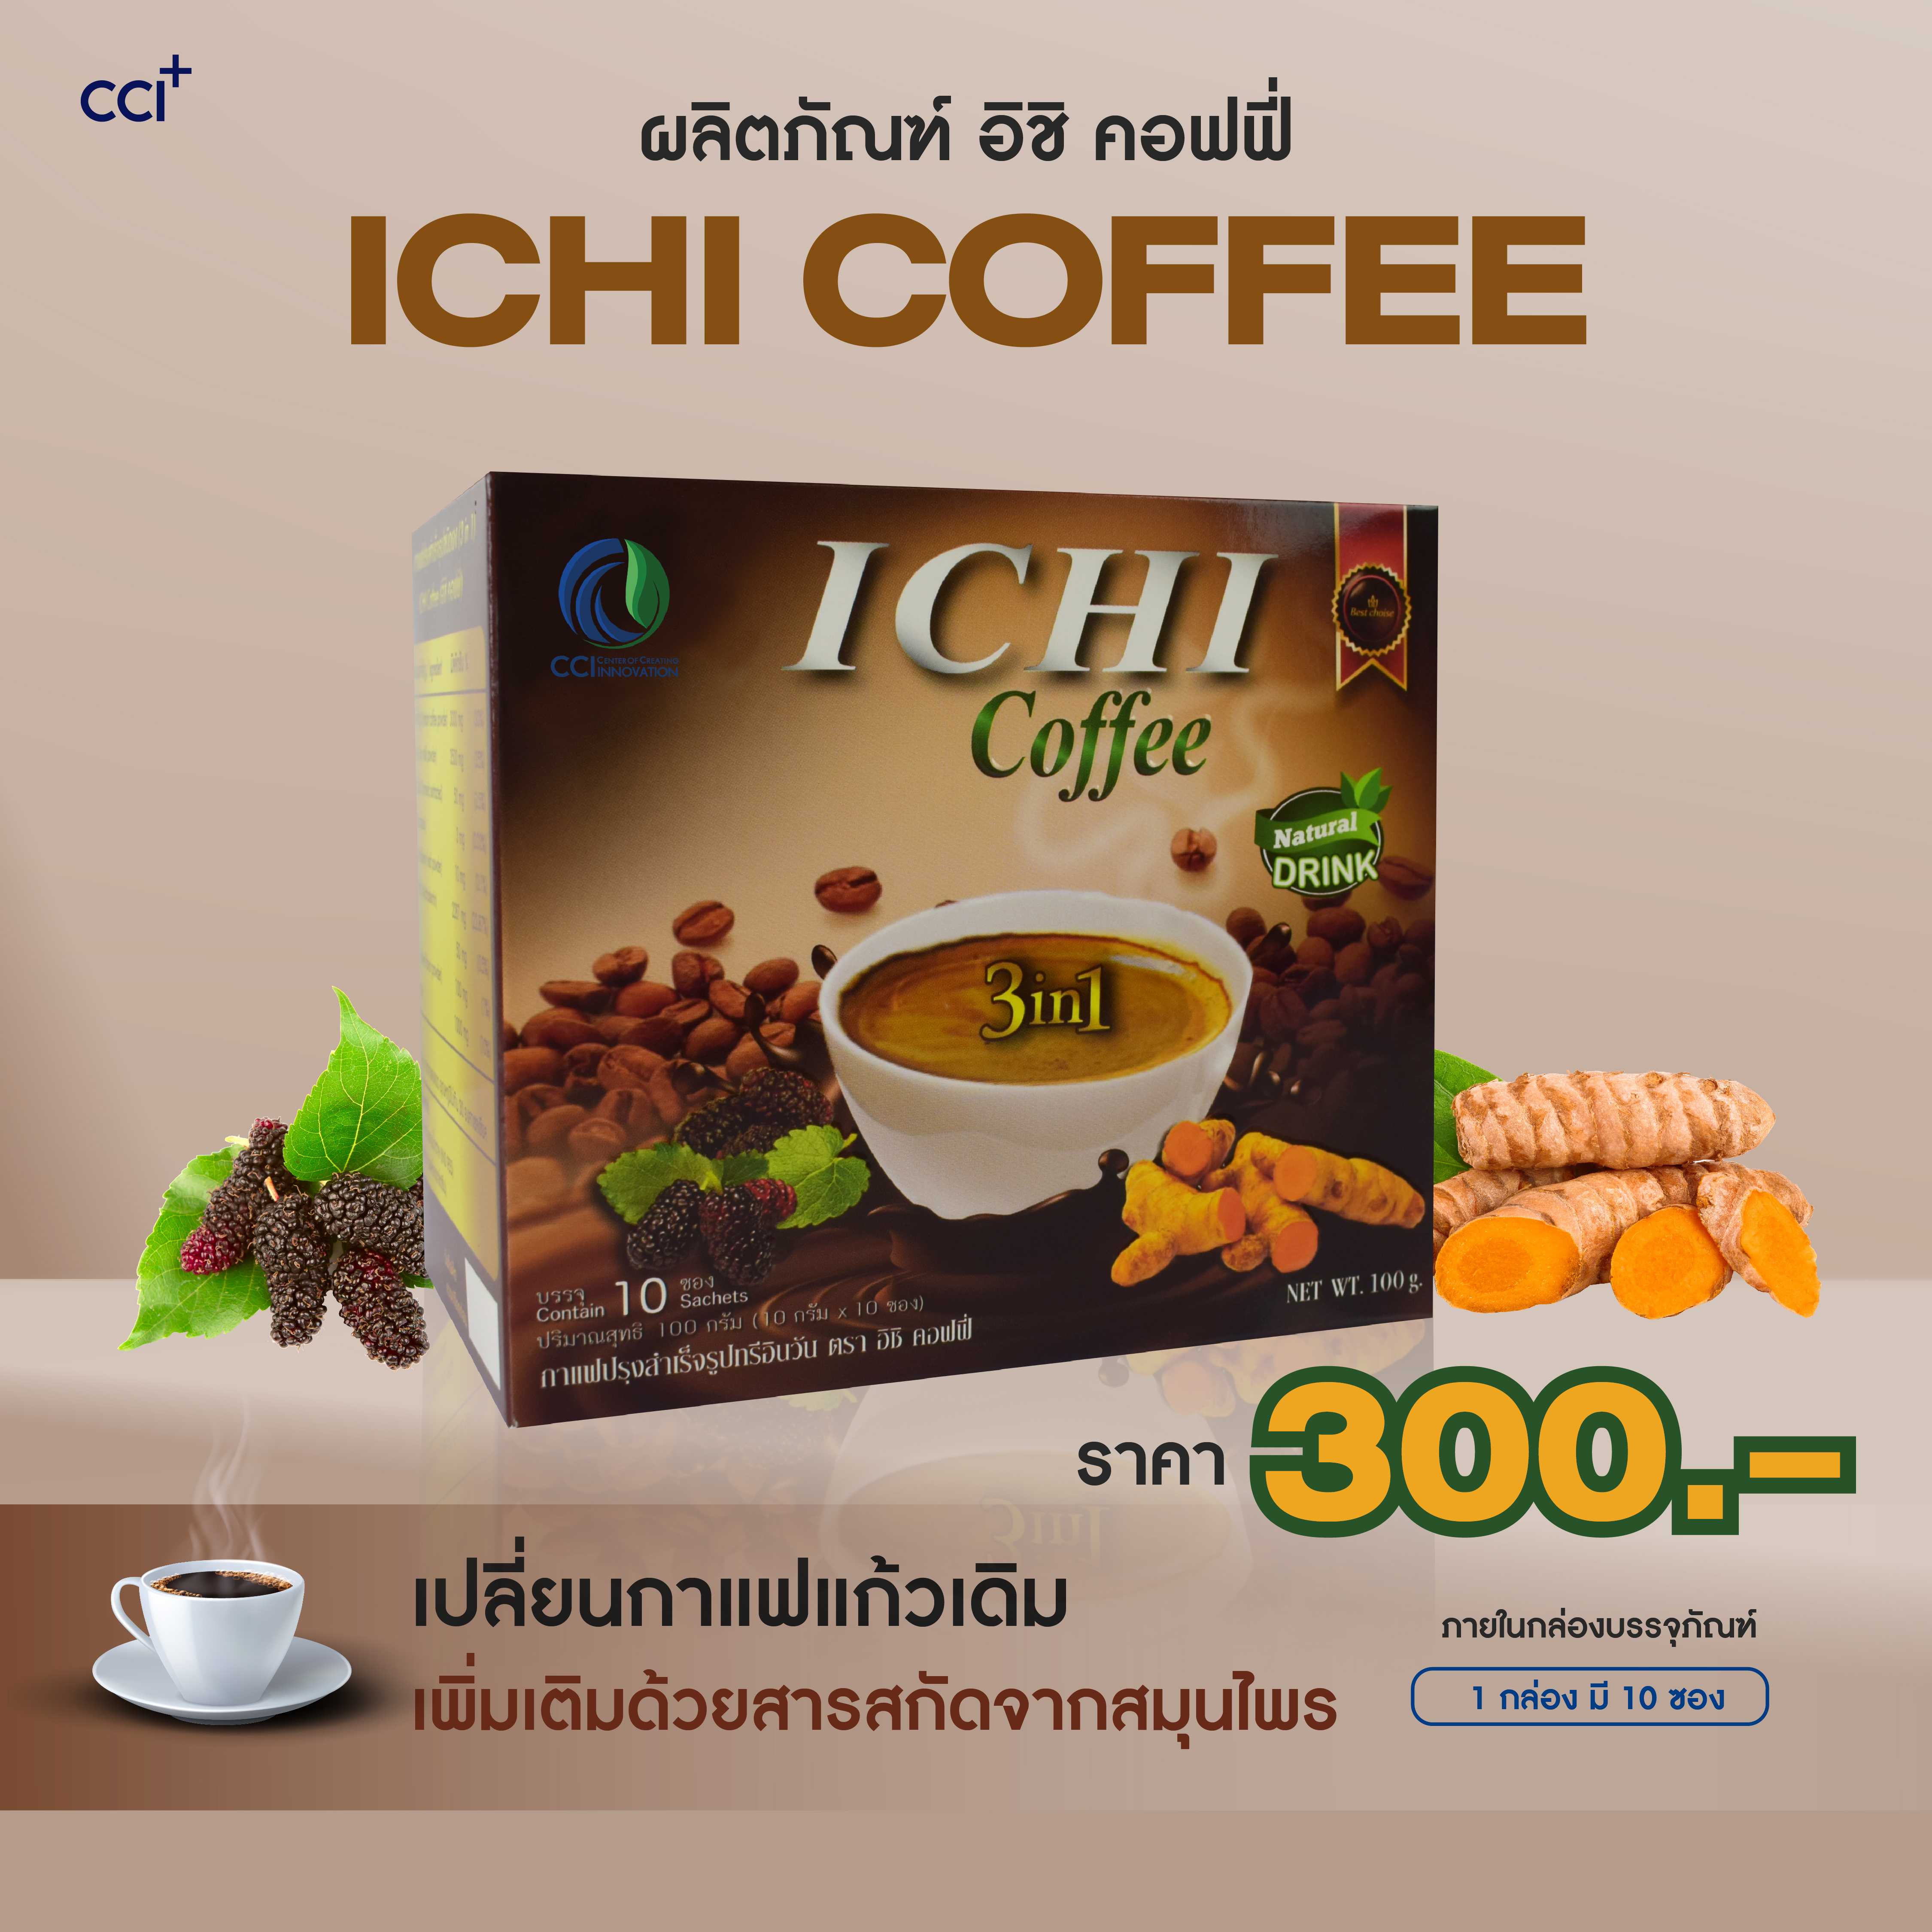 Ichi Coffee 3in1 กาแฟสำเร็จรูปชนิดผงตรา อิชิคอฟฟี่ 3in1 กาแฟขมิ้นชัน ใบหม่อน